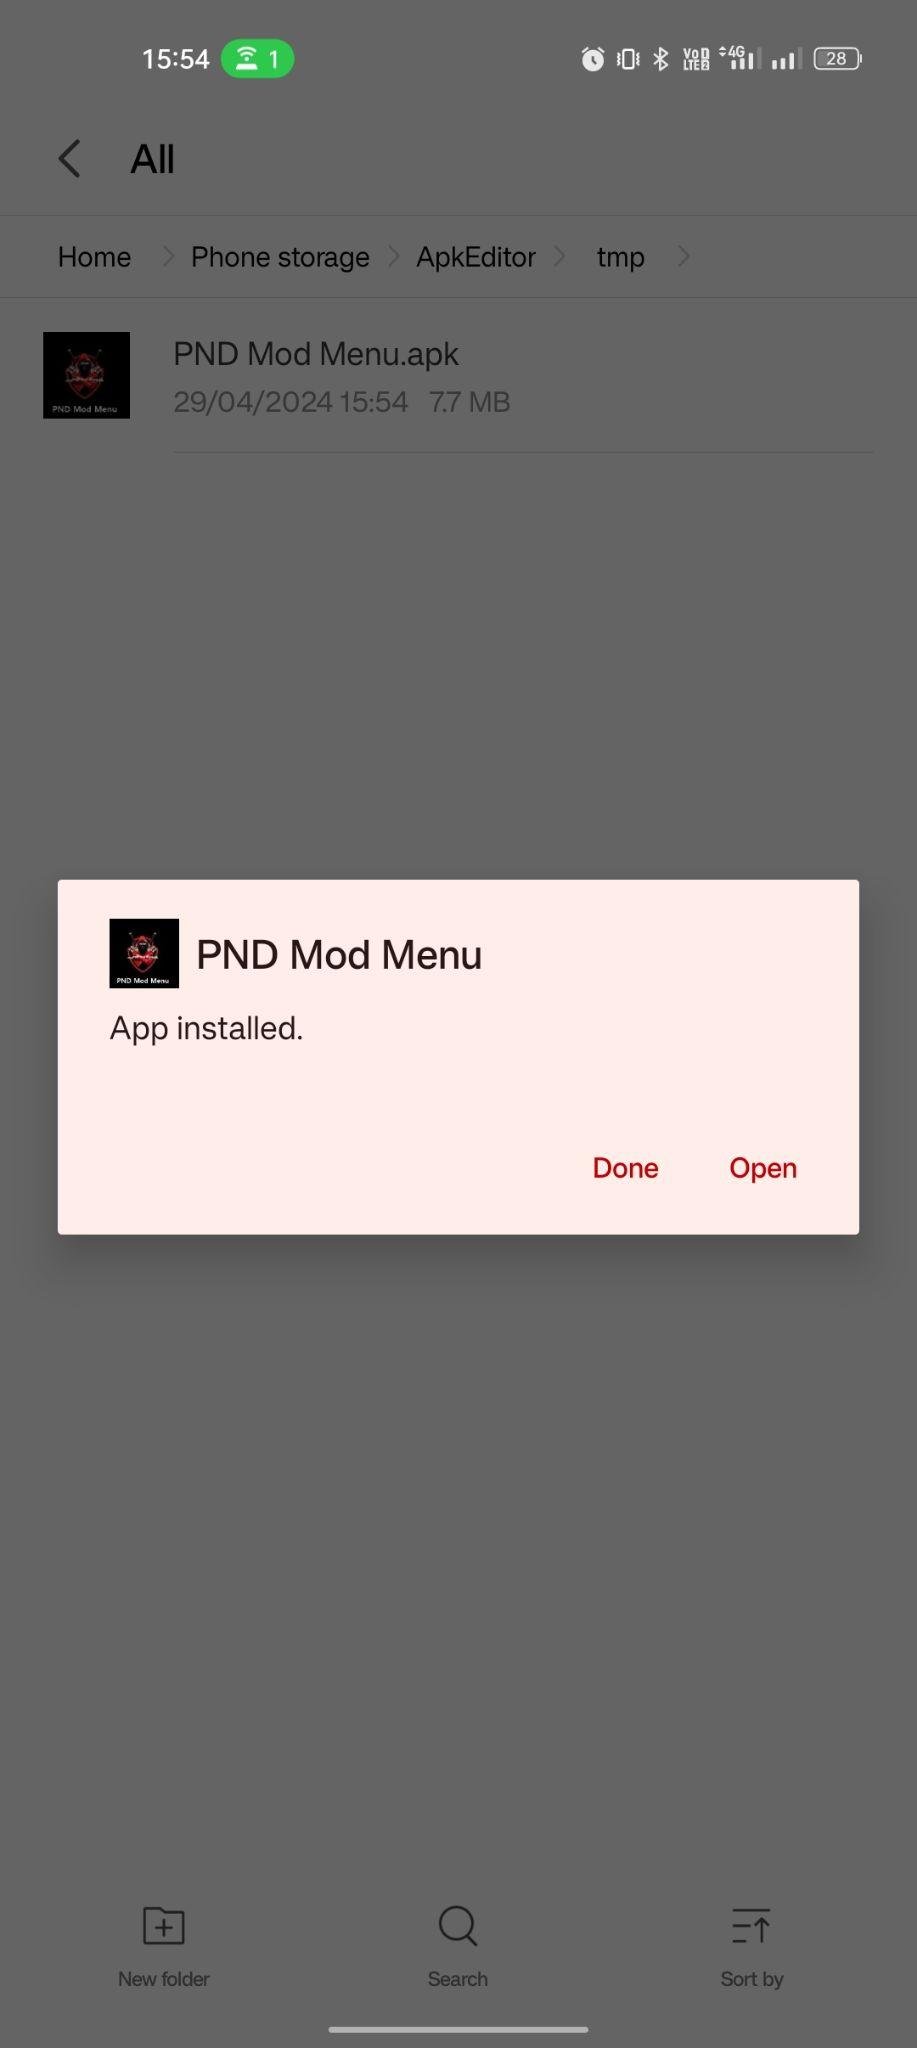 PND Mod Menu apk installed